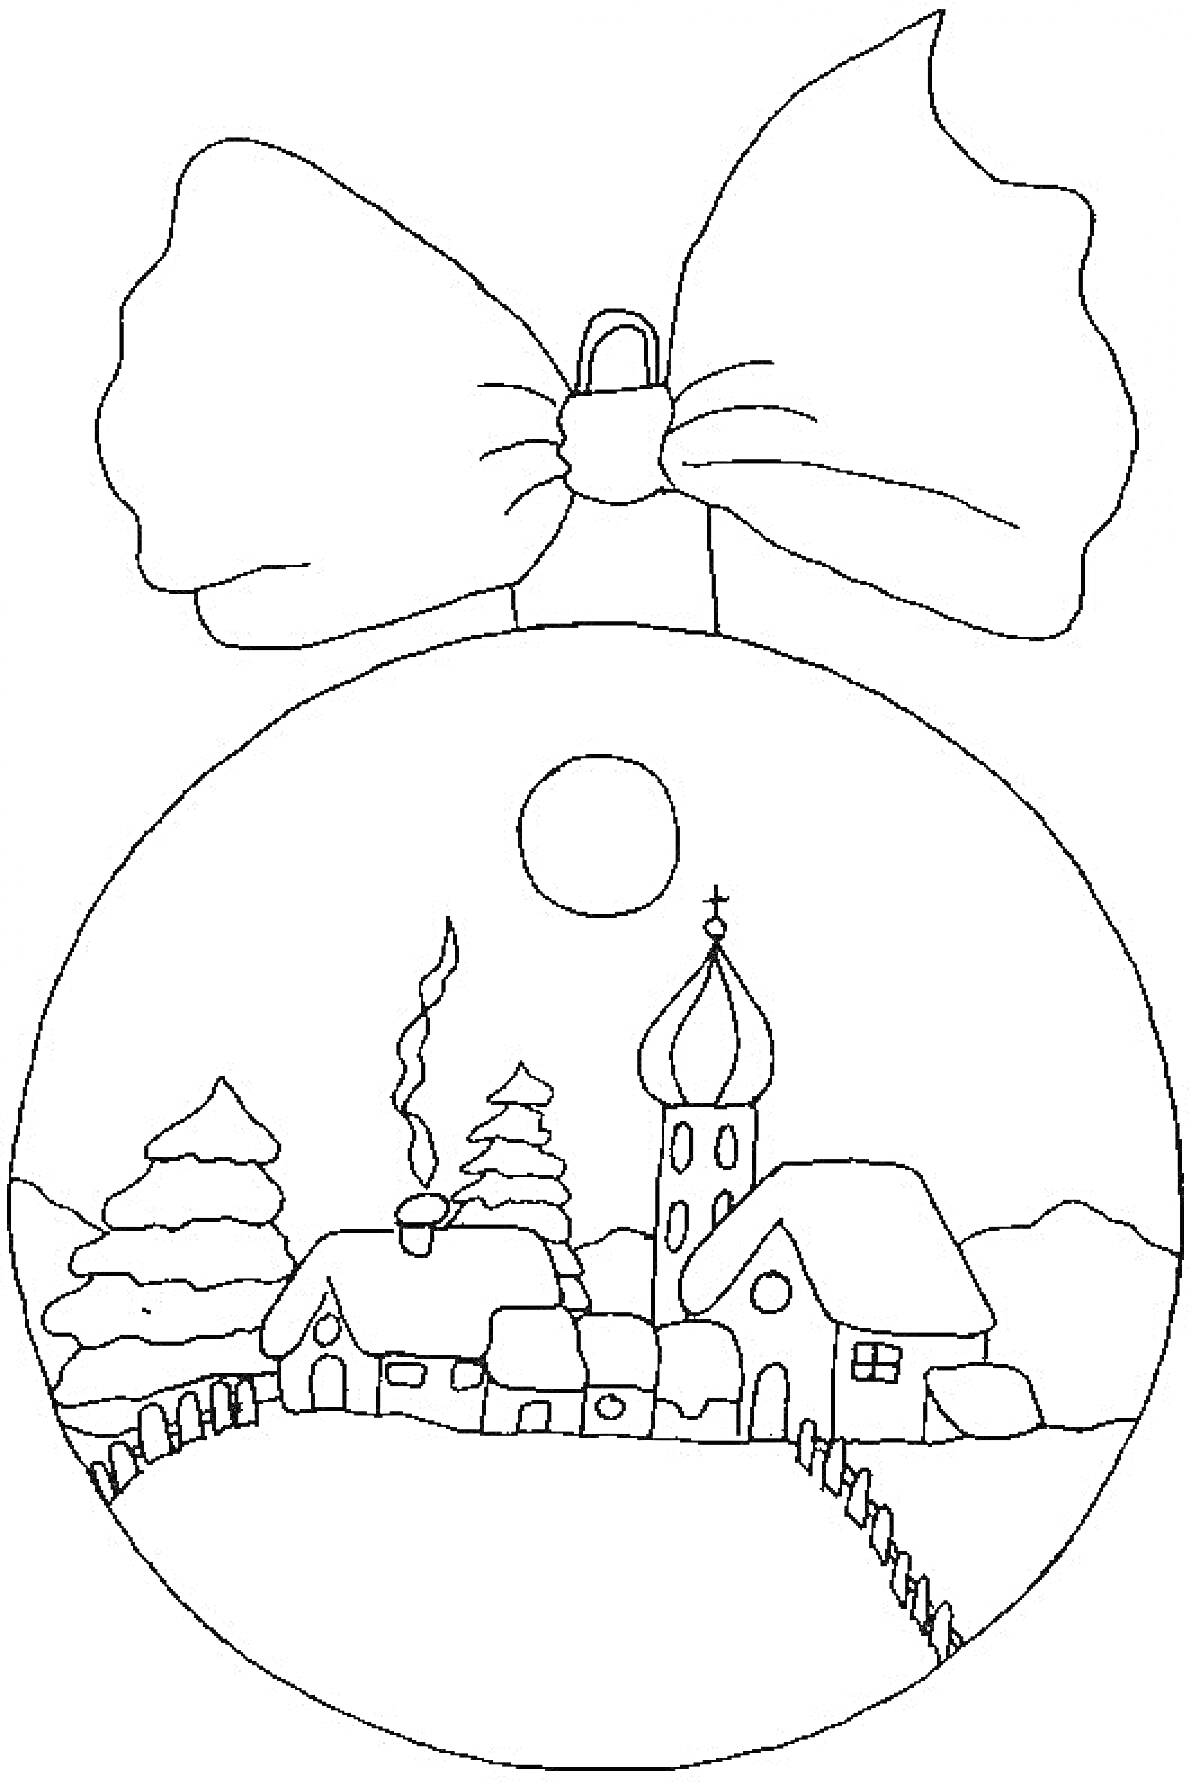 РаскраскаНовогодний шар с деревней, церковью, домиками, соснами, забором, луной и бантом